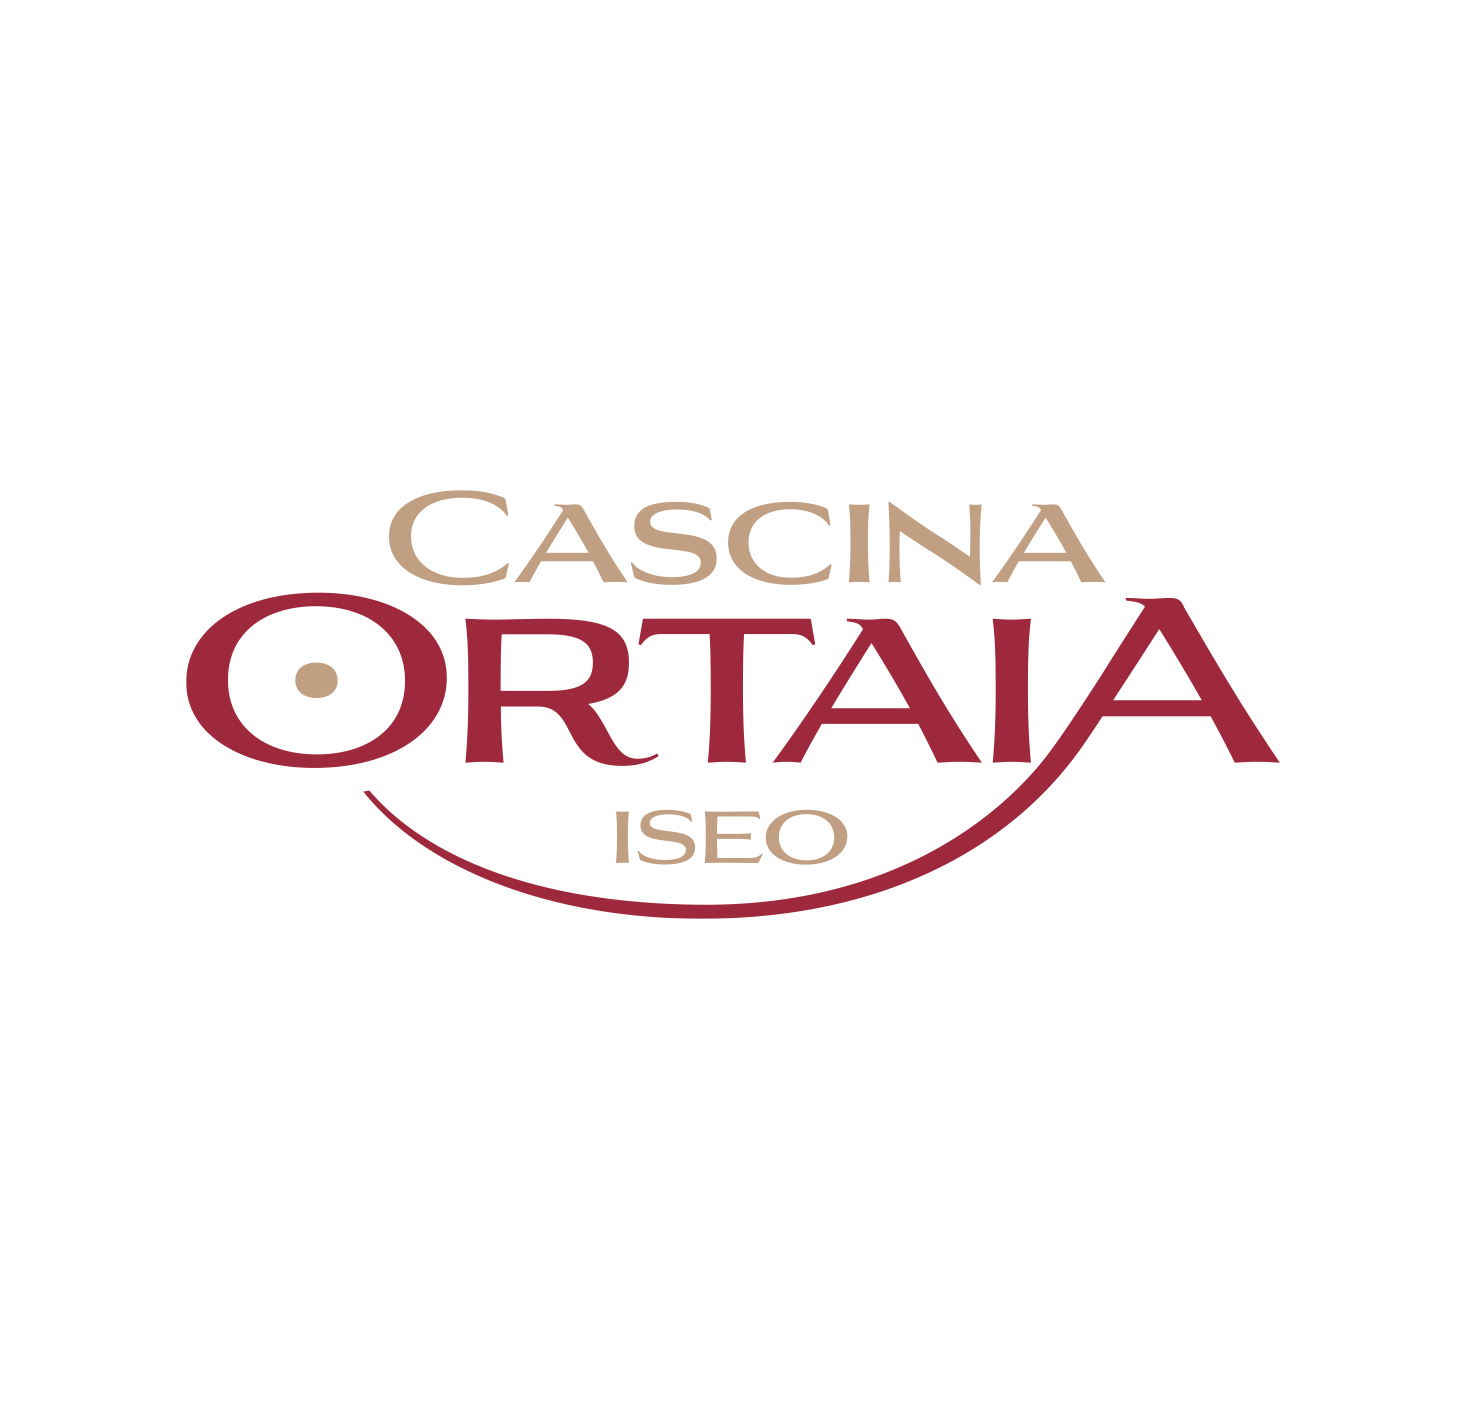 Cascina Ortaia, Iseo